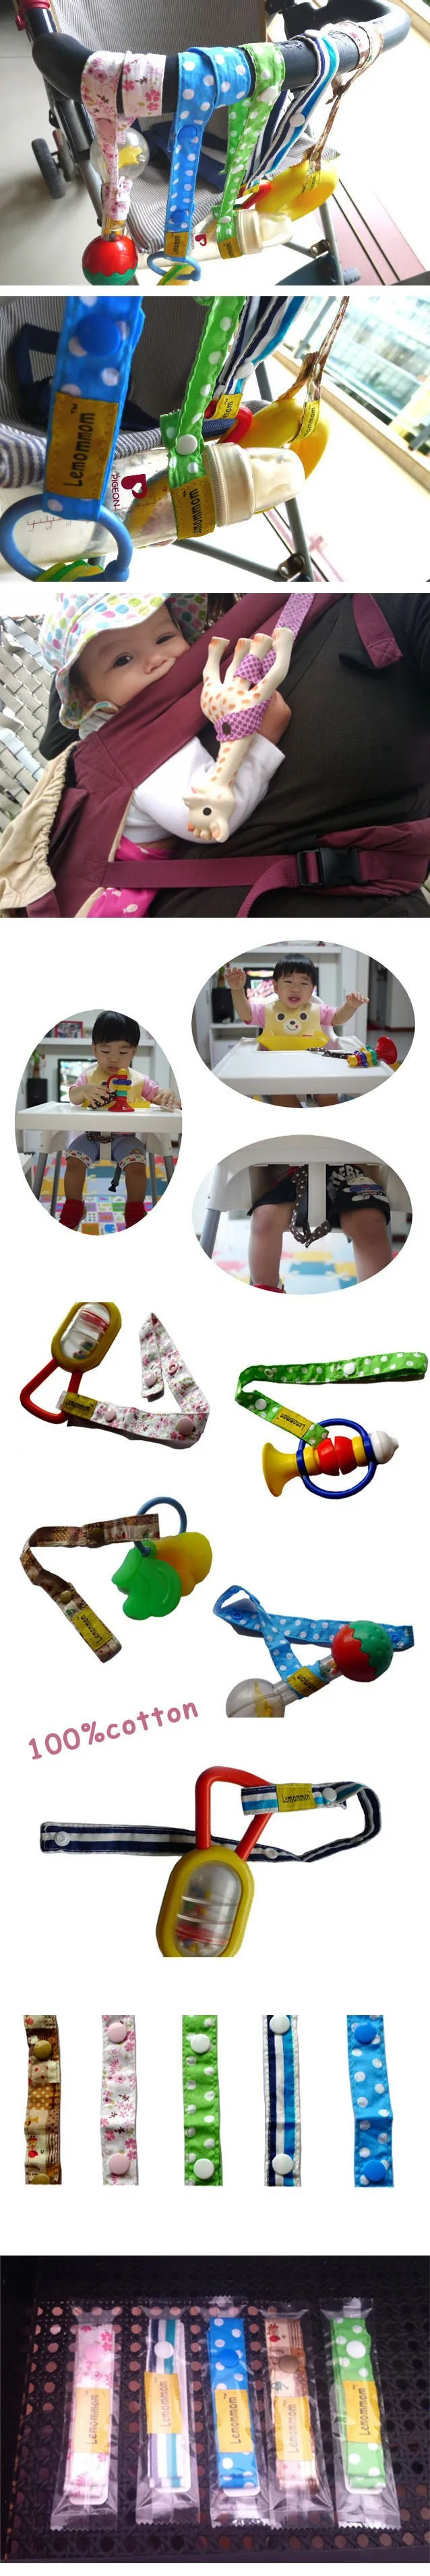 Детская коляска для новорожденных аксессуары игрушки Противоскользящий пояс для подтяжек детские игрушки лента защита падения от 5 шт./партия